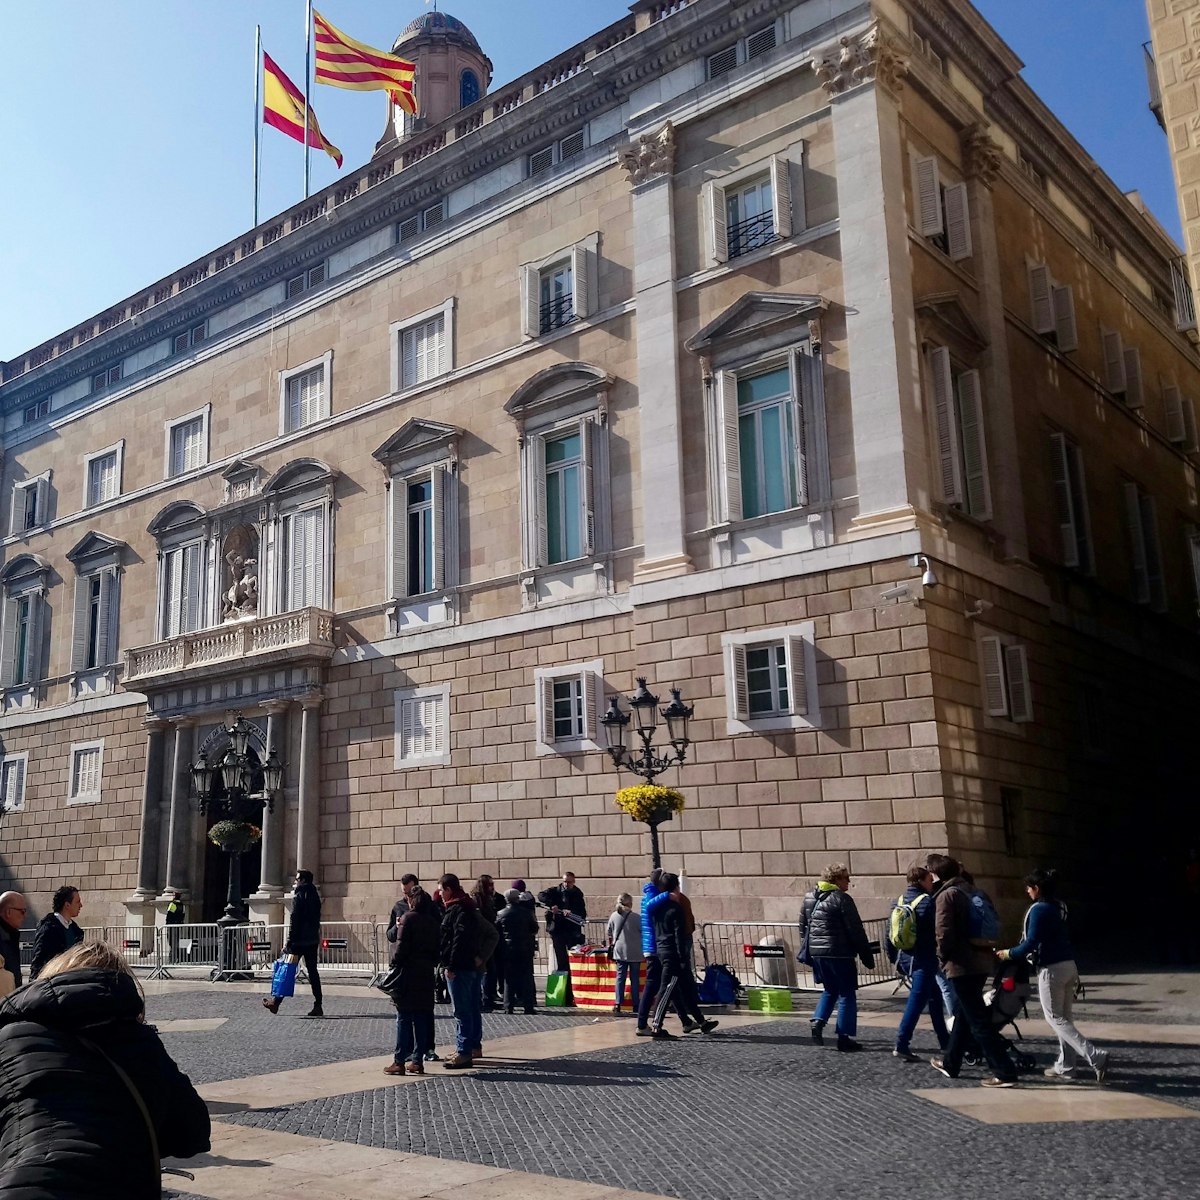 Plaça de Sant Jaume with the Palau de la Generalitat in the background